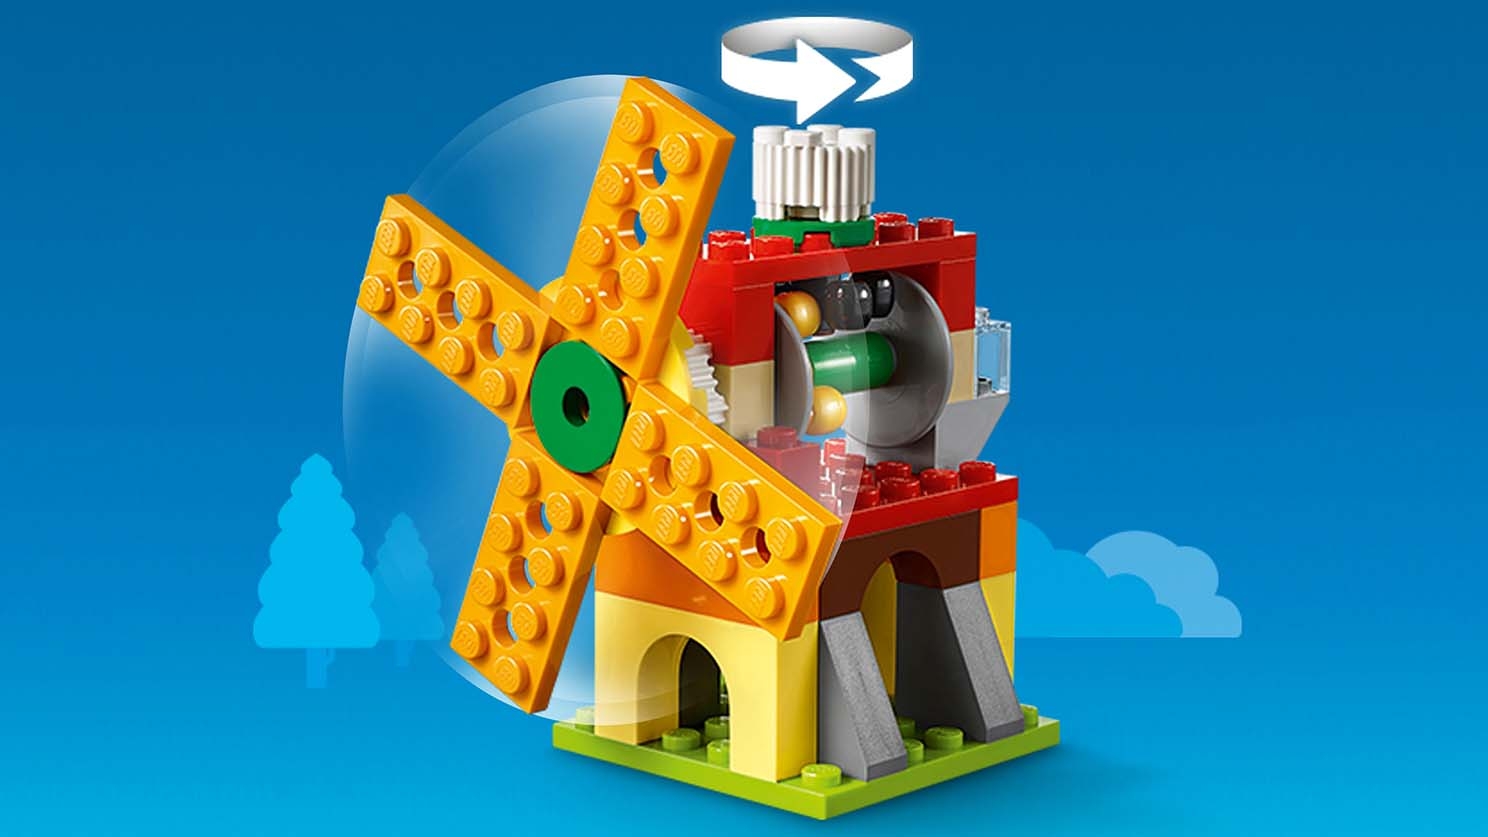 Bricks Gears 10712 - LEGO® Classic Sets - LEGO.com for kids